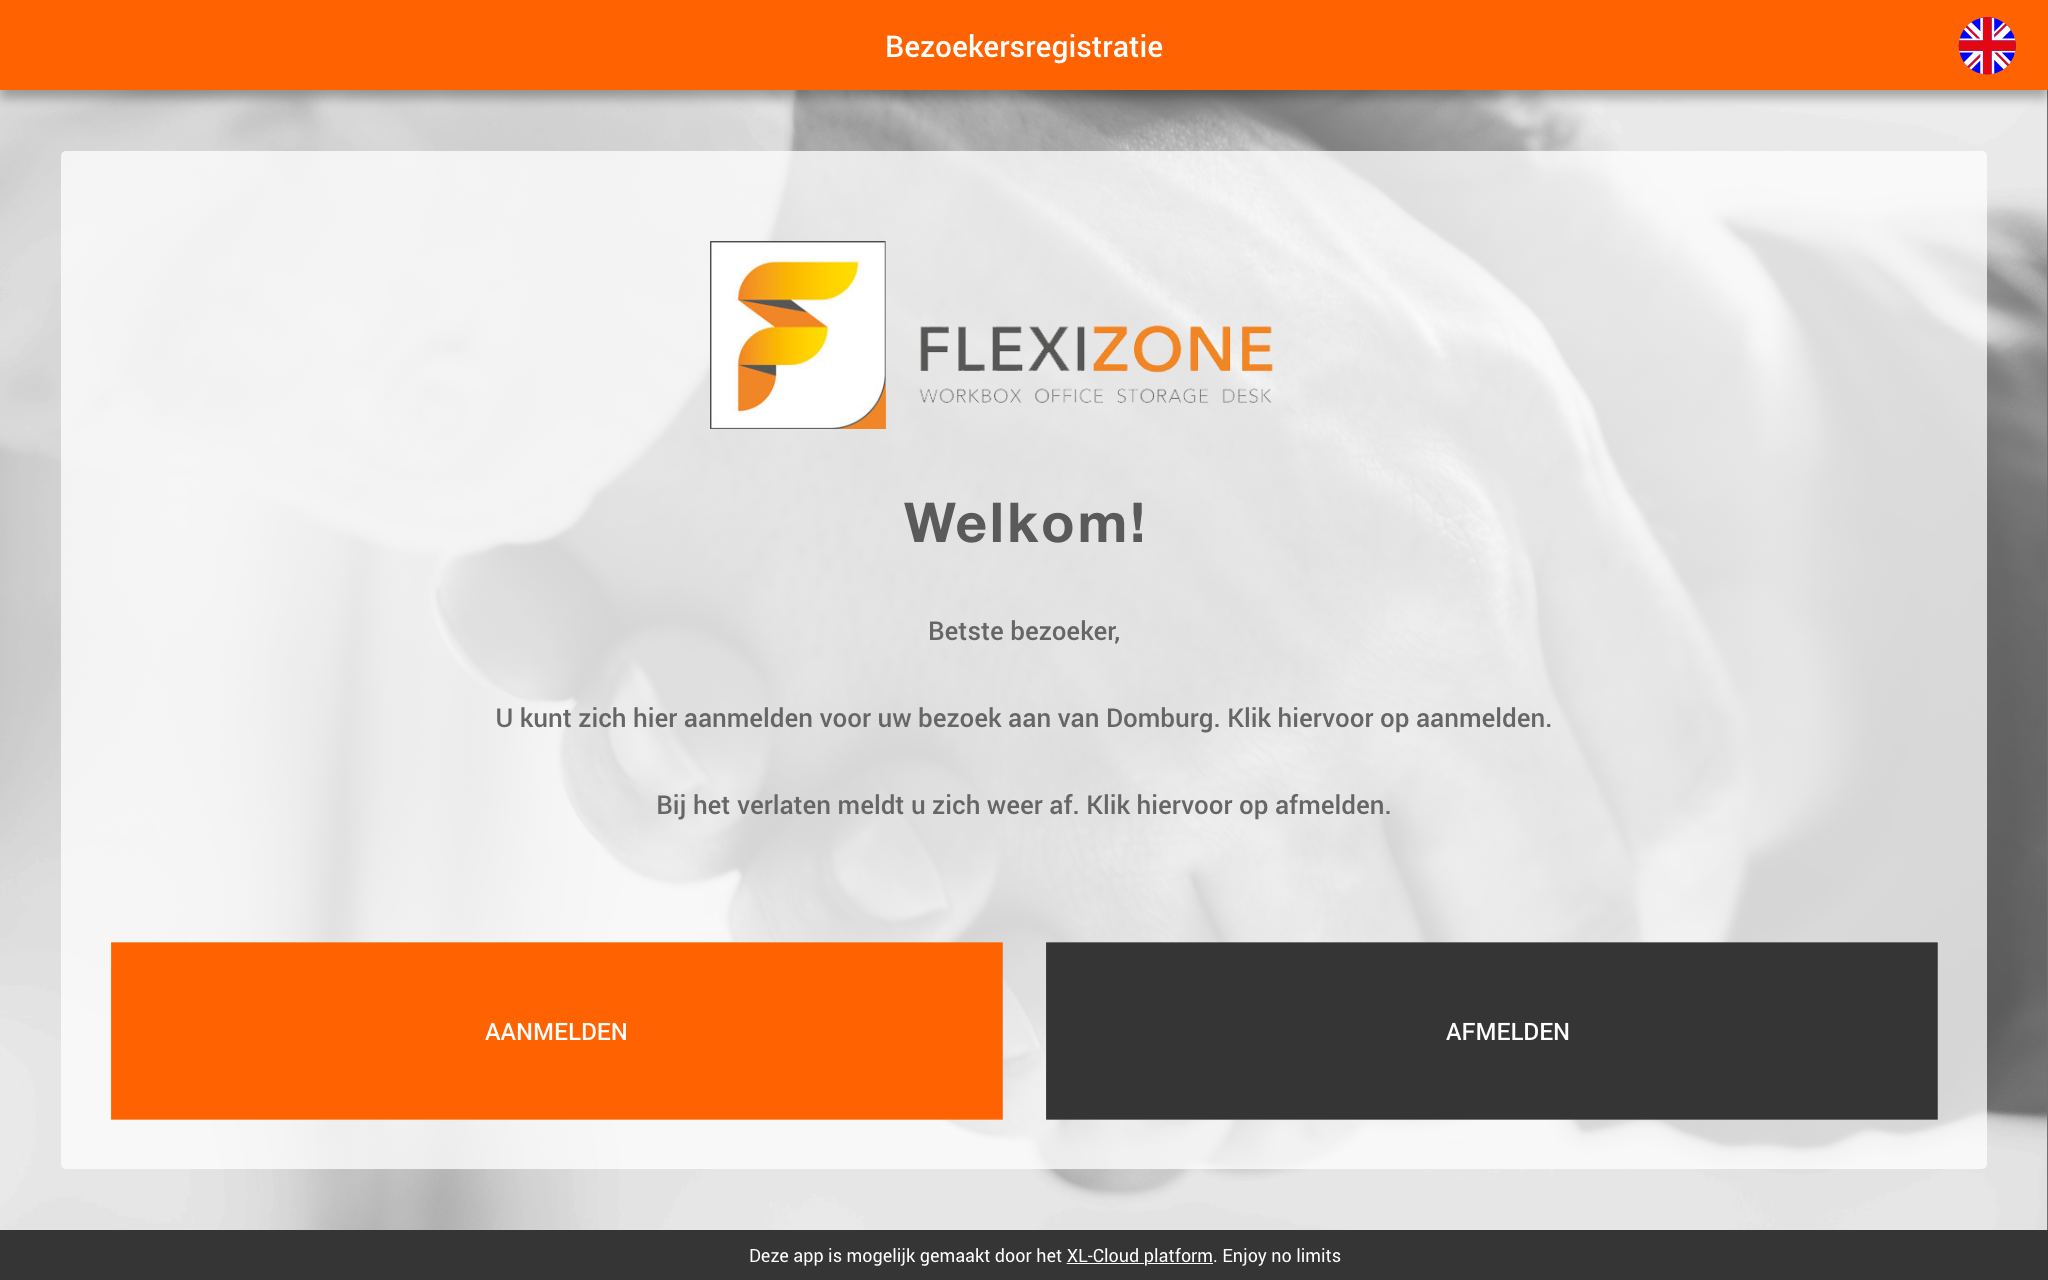 Flexizone